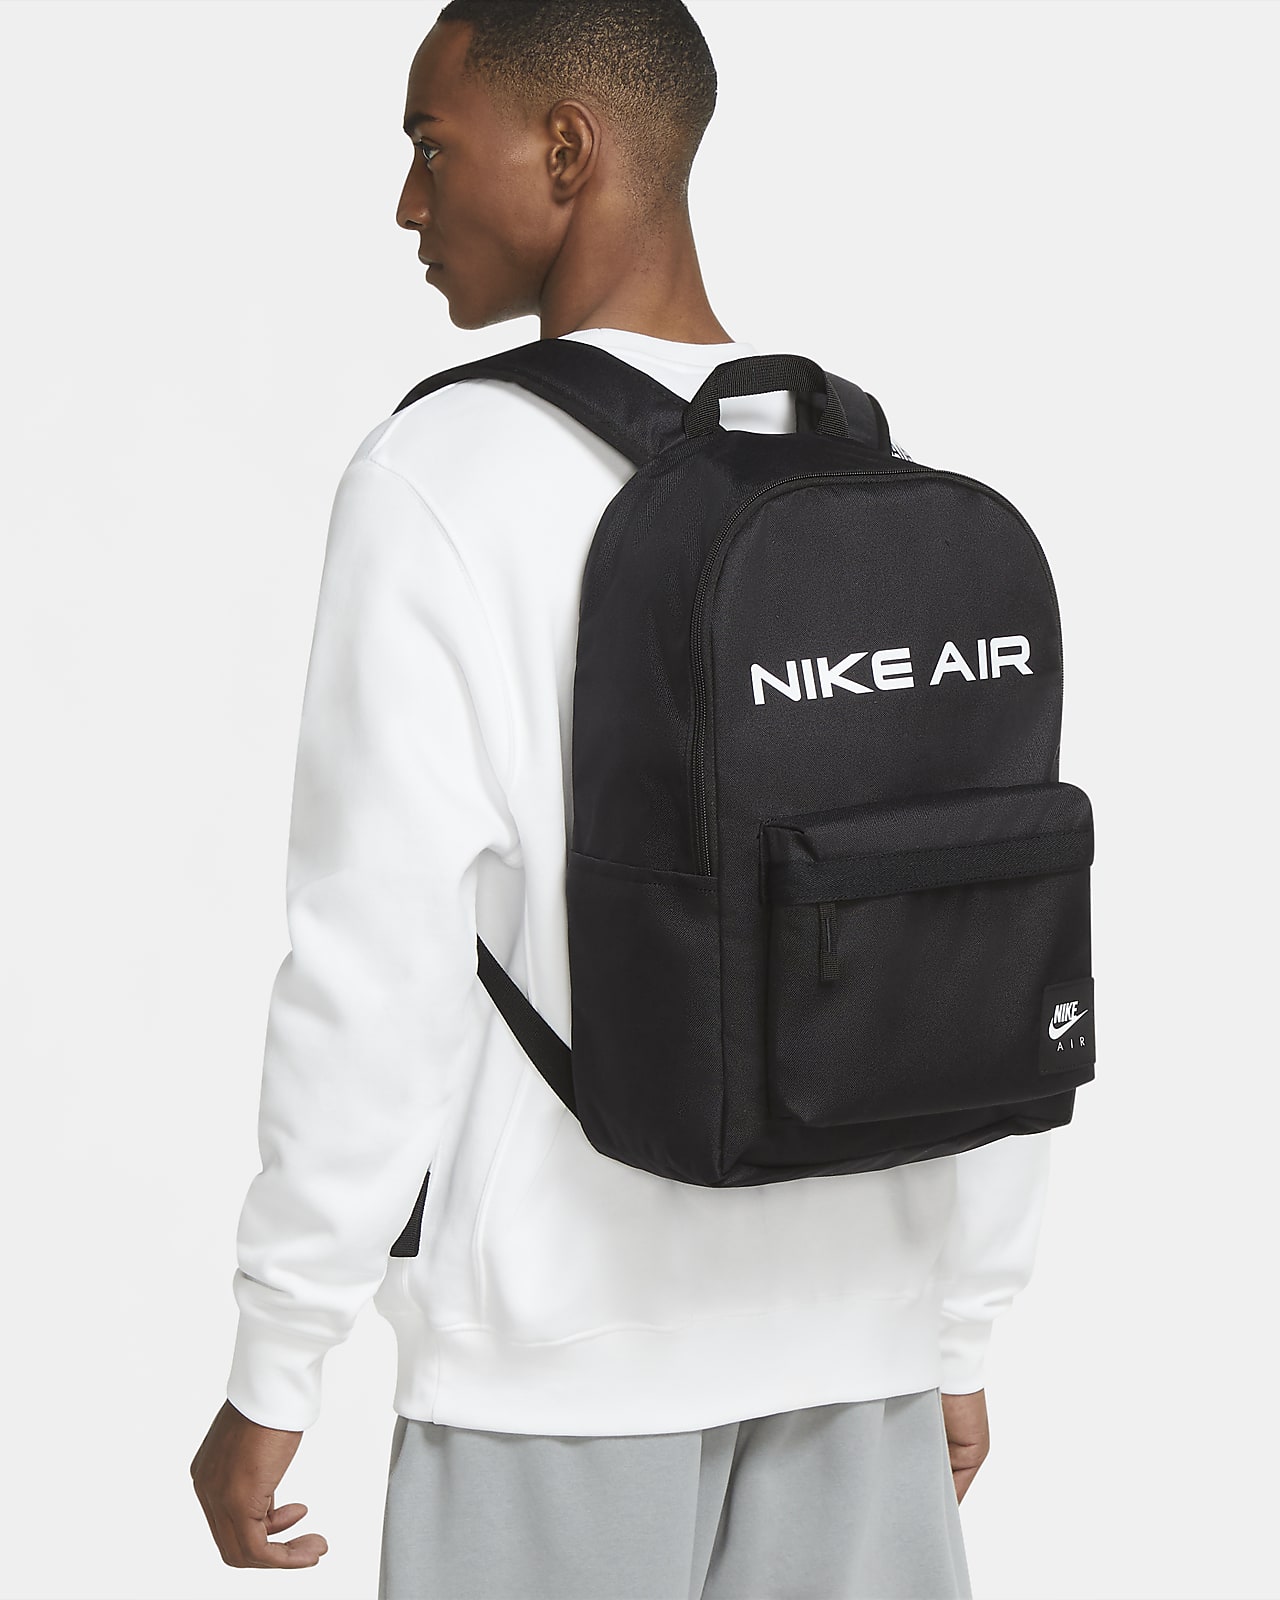 nike air heritage backpack